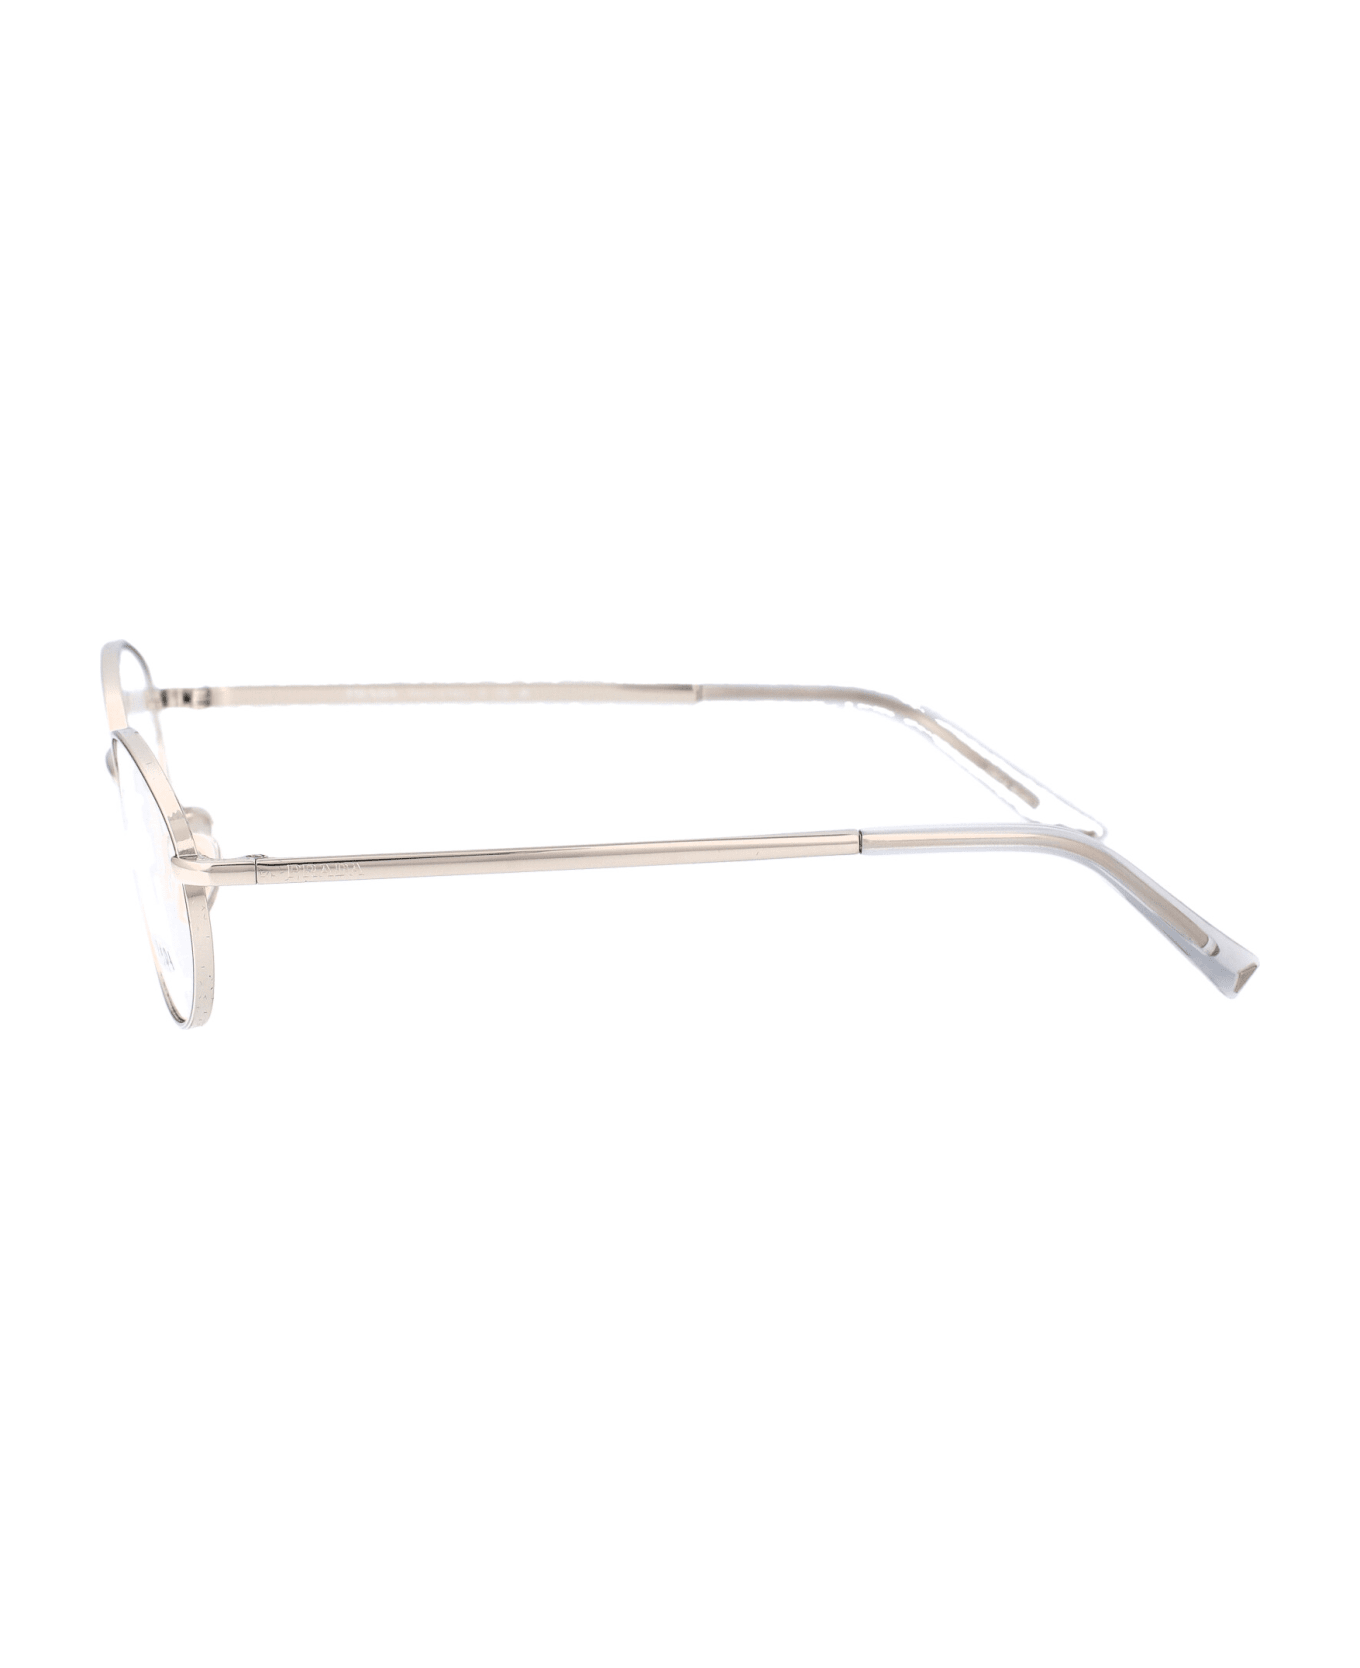 Prada Eyewear 0pr A57v Glasses - 1BC1O1 SILVER アイウェア